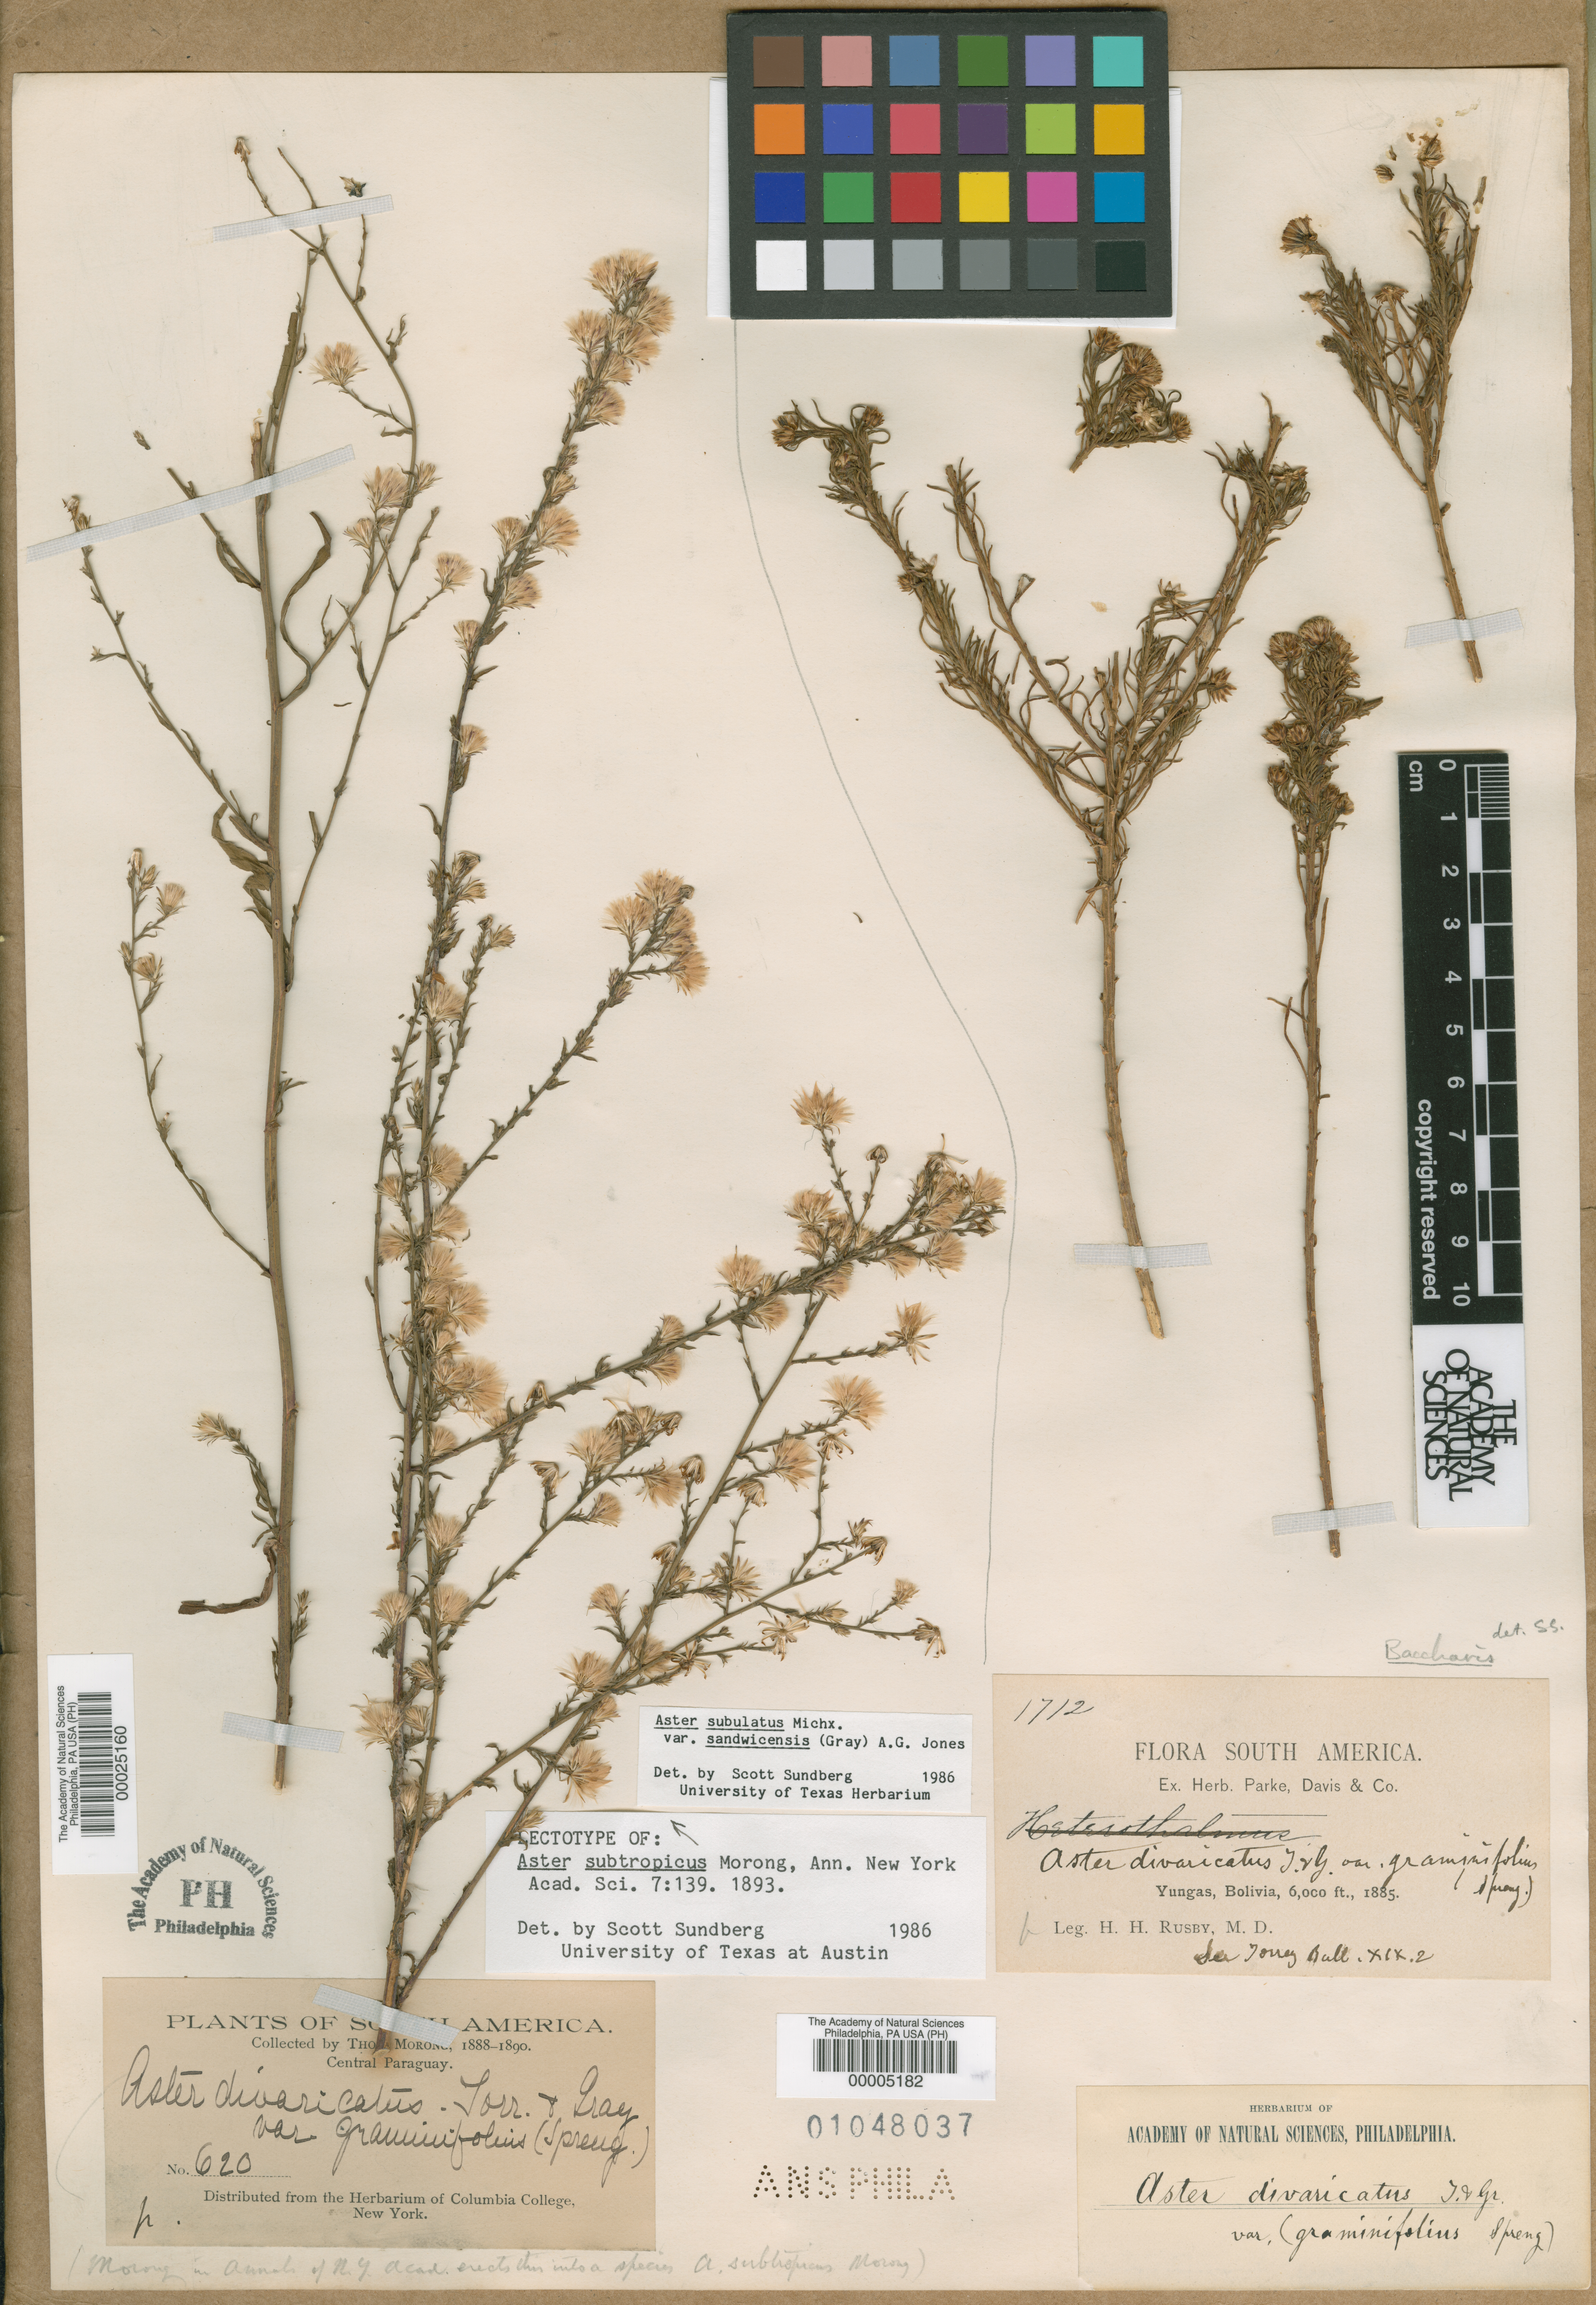 Symphyotrichum graminifolium image